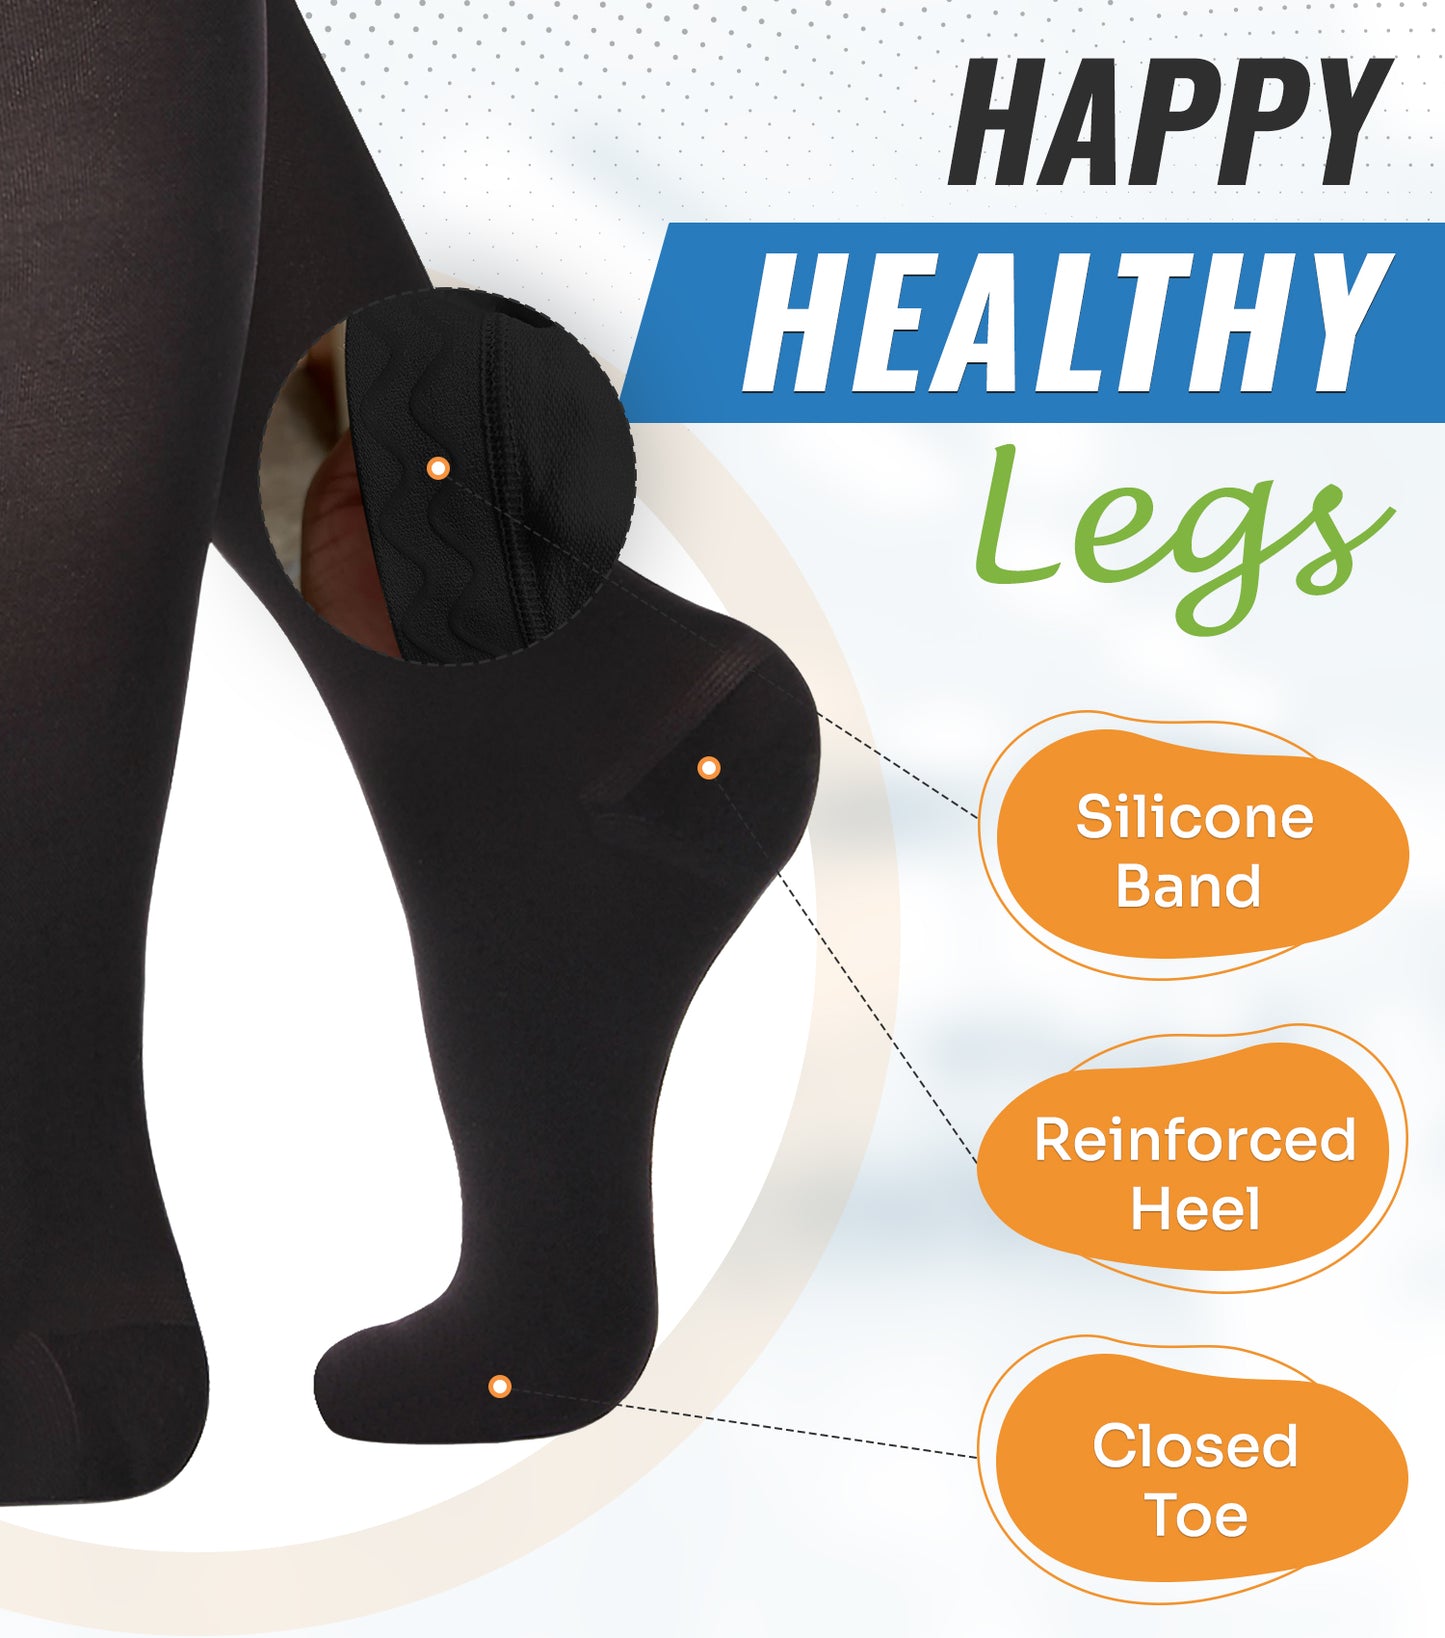 Happy Healthy Legs